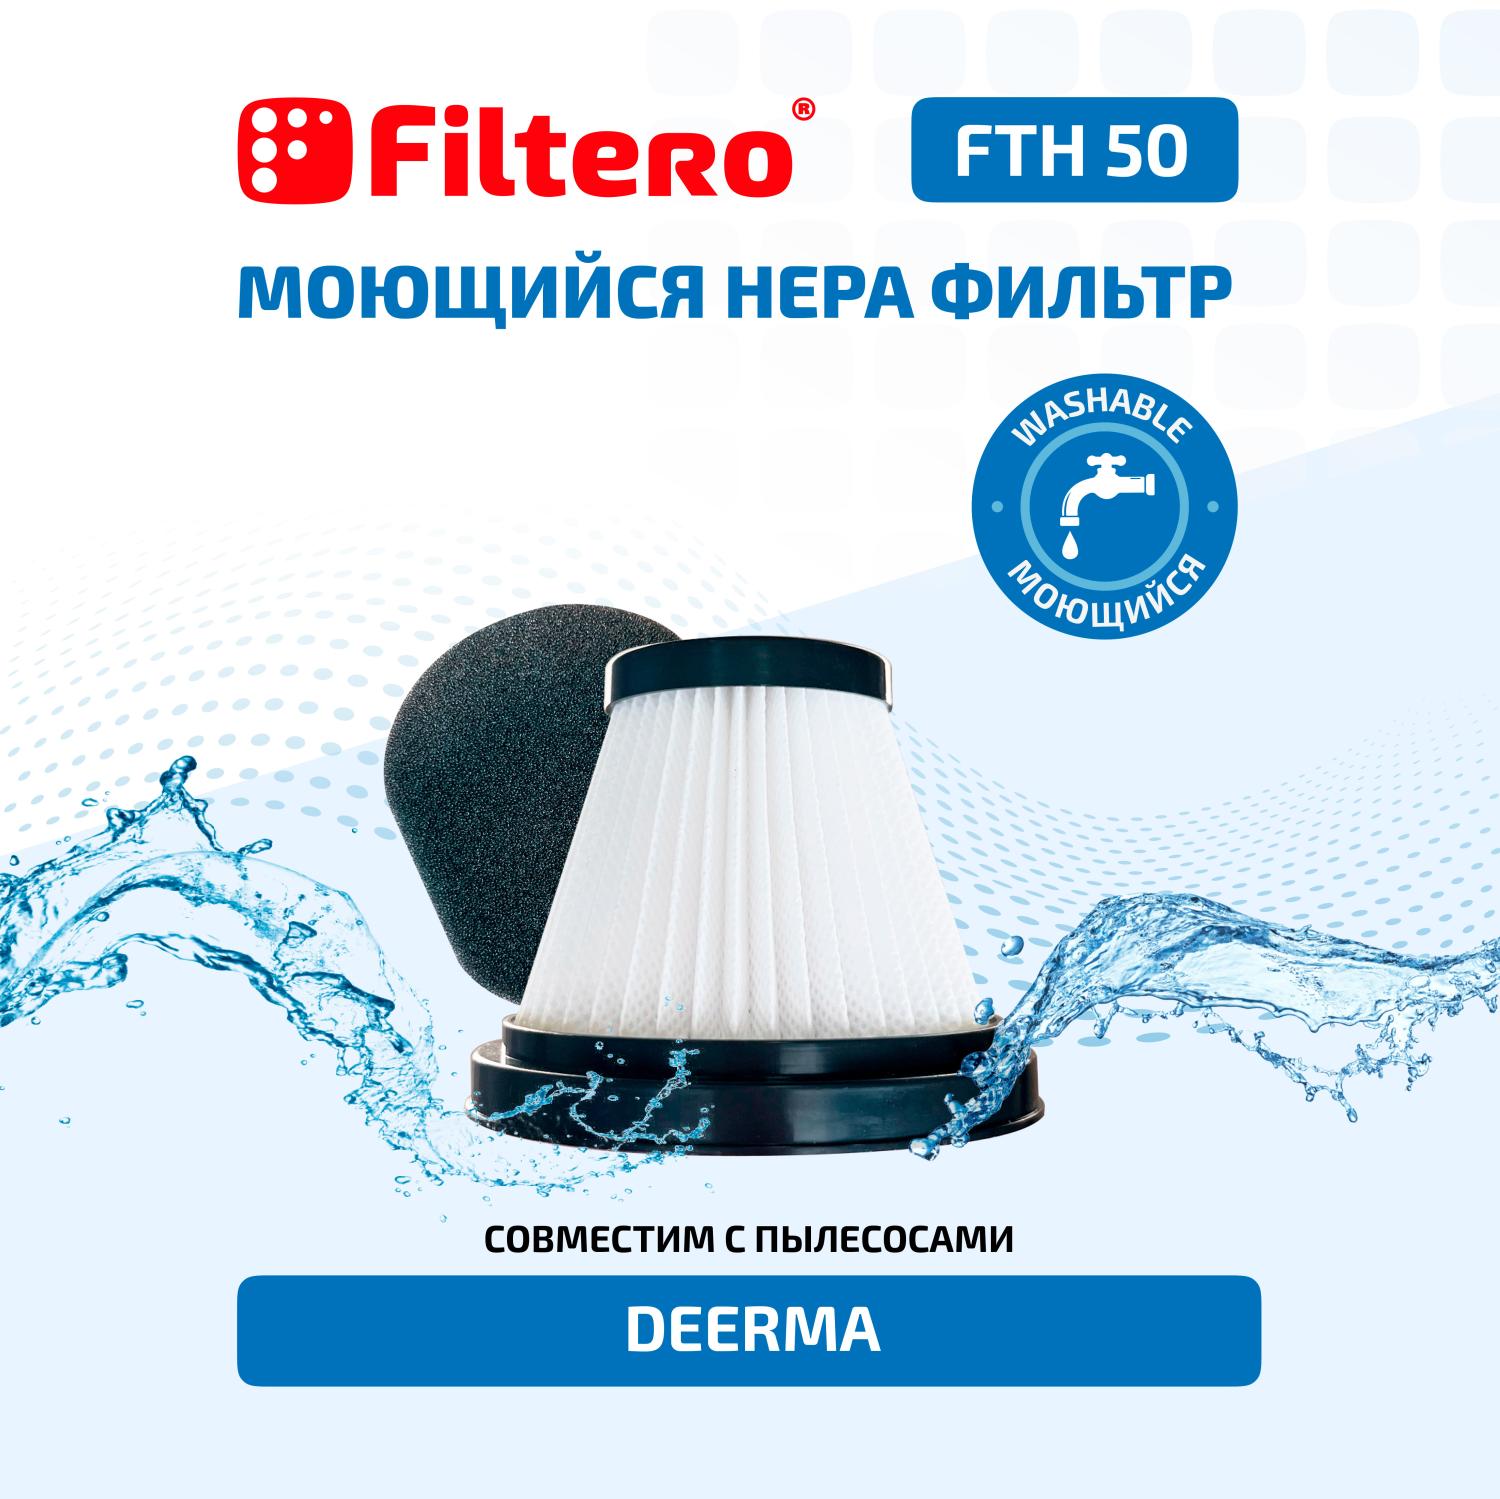 Filtero FTH 50 Набор фильтров для вертикального пылесоса Xiaomi, Deerma DX115, 2 пр.